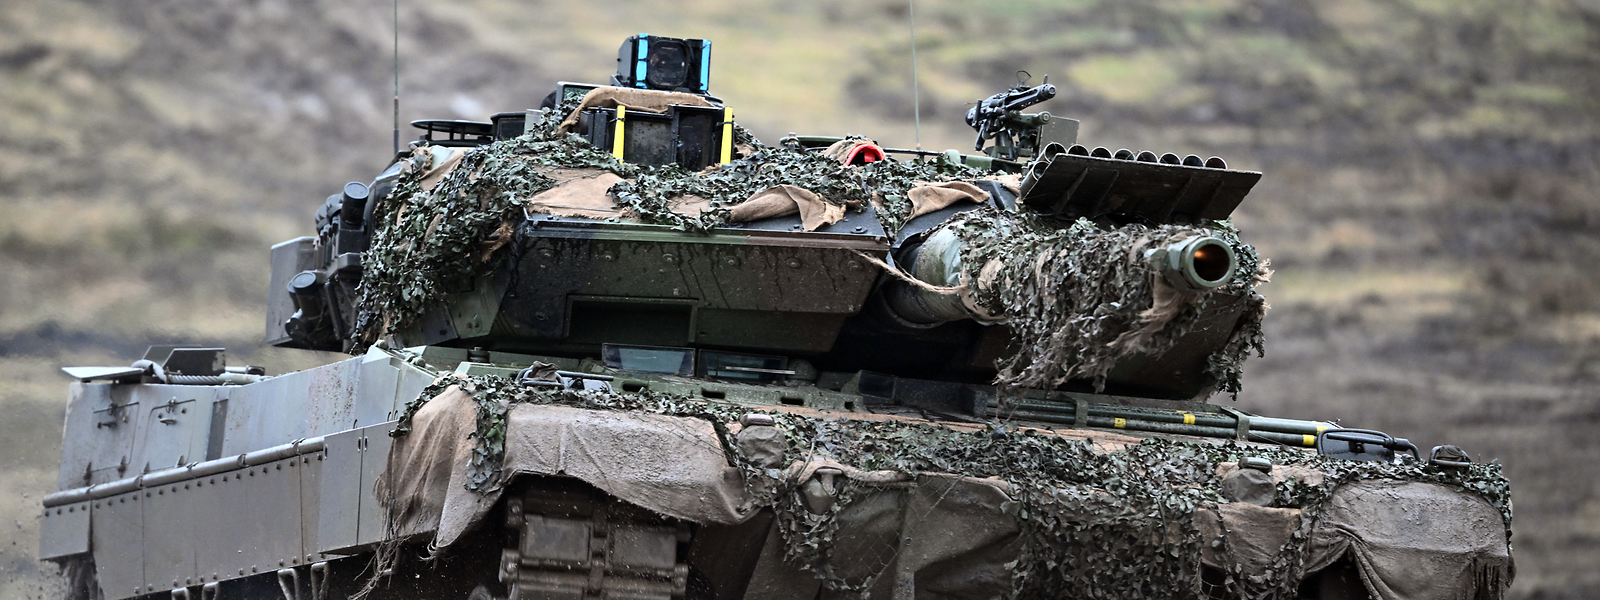 Die Schweiz verfügt über 96 eingemottete Leopard-2-Panzer.